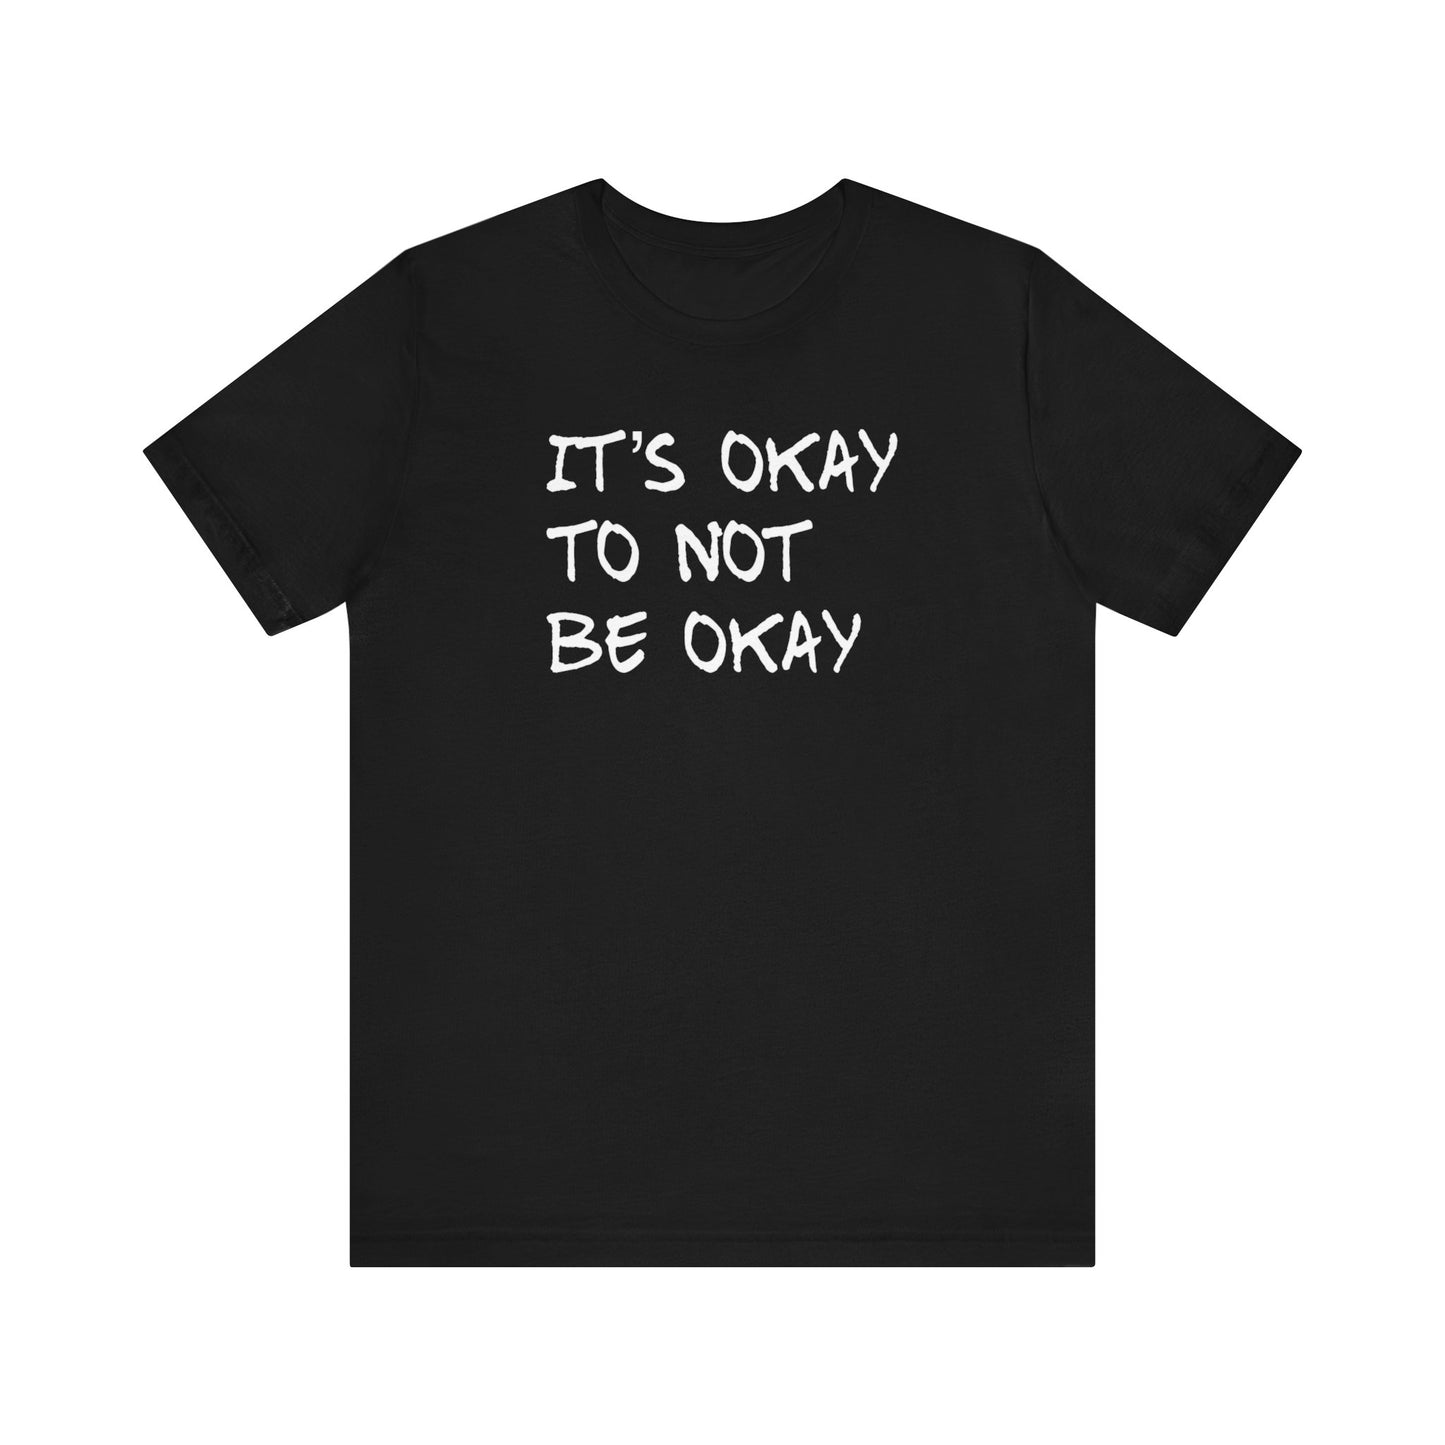 It's Okay to Not Be Okay